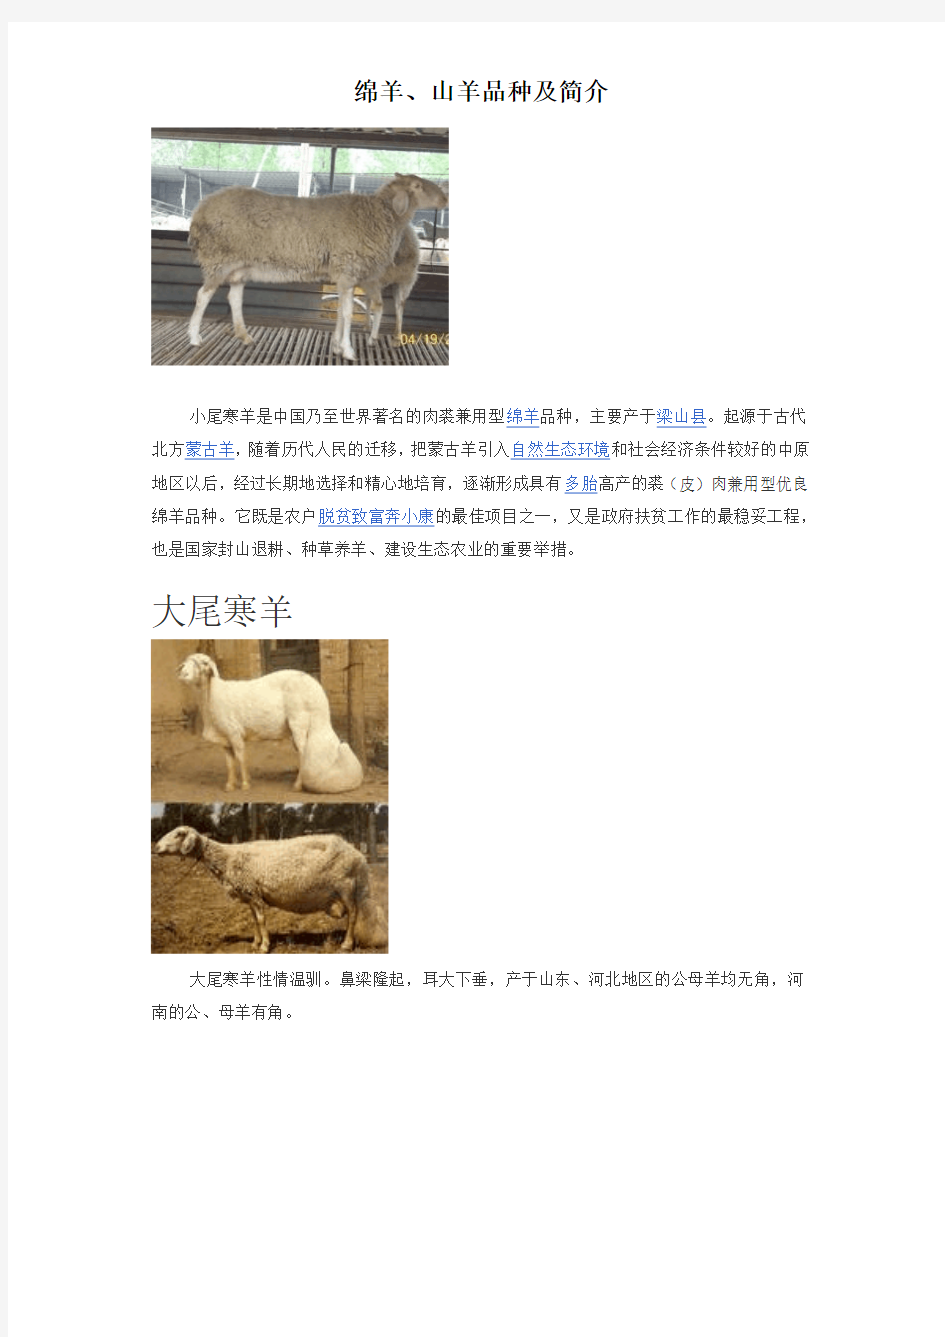 绵羊、山羊品种及简介